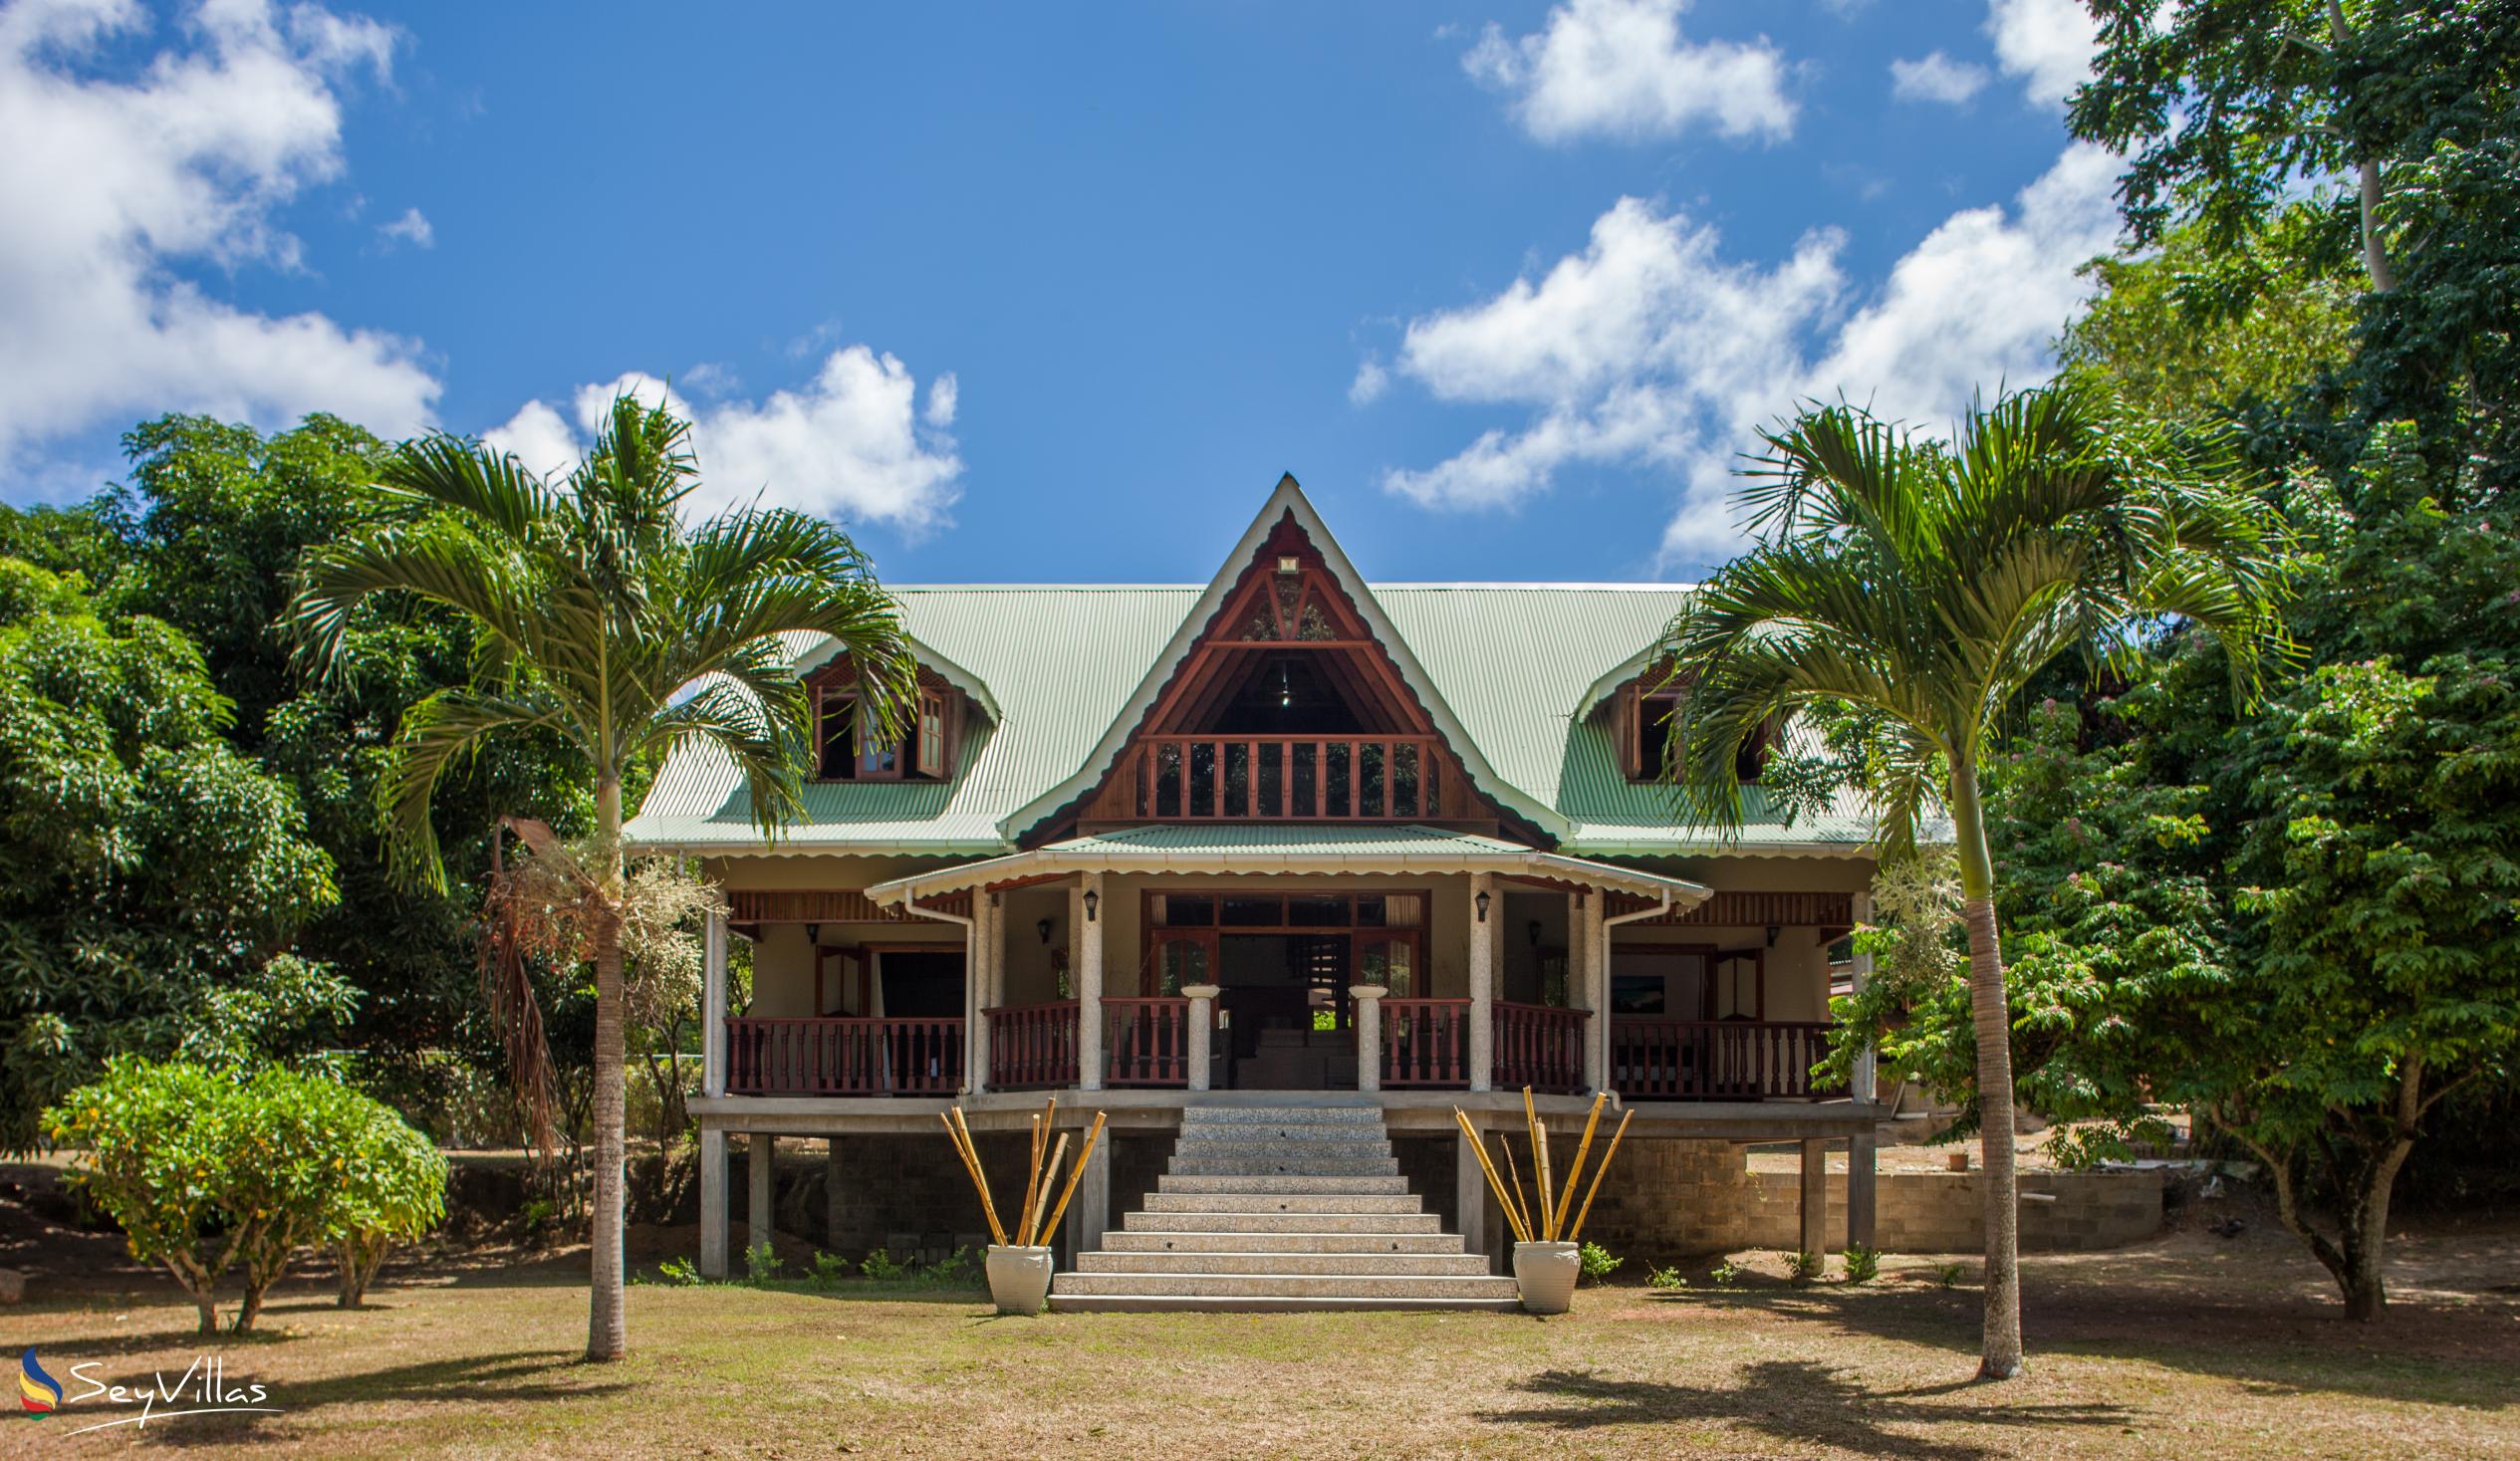 Photo 1: Villa Pasyon - Outdoor area - La Digue (Seychelles)